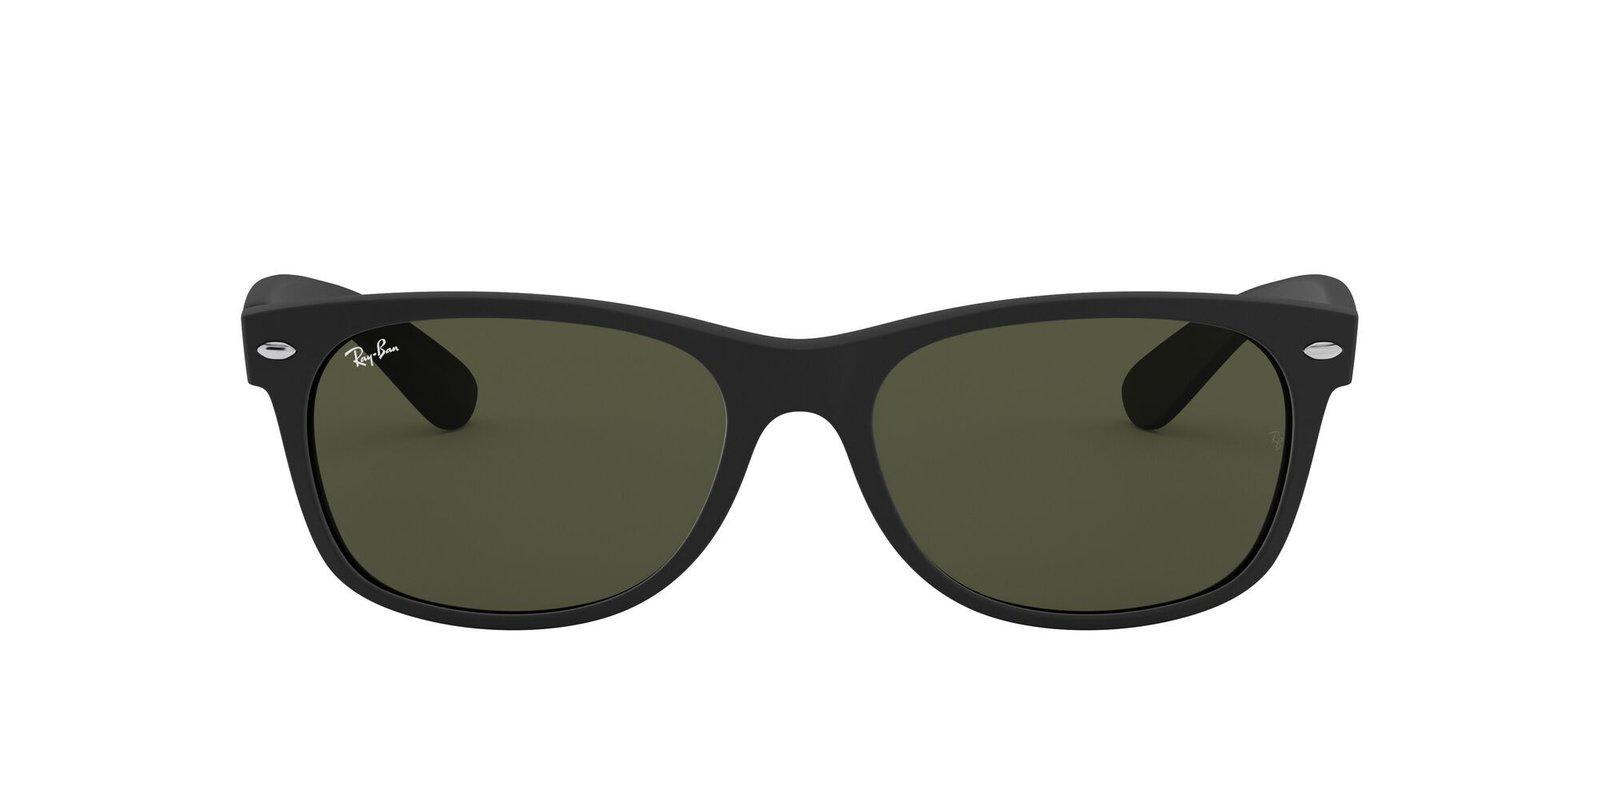 Ray Ban New Wayfarer Sunglasses In Green